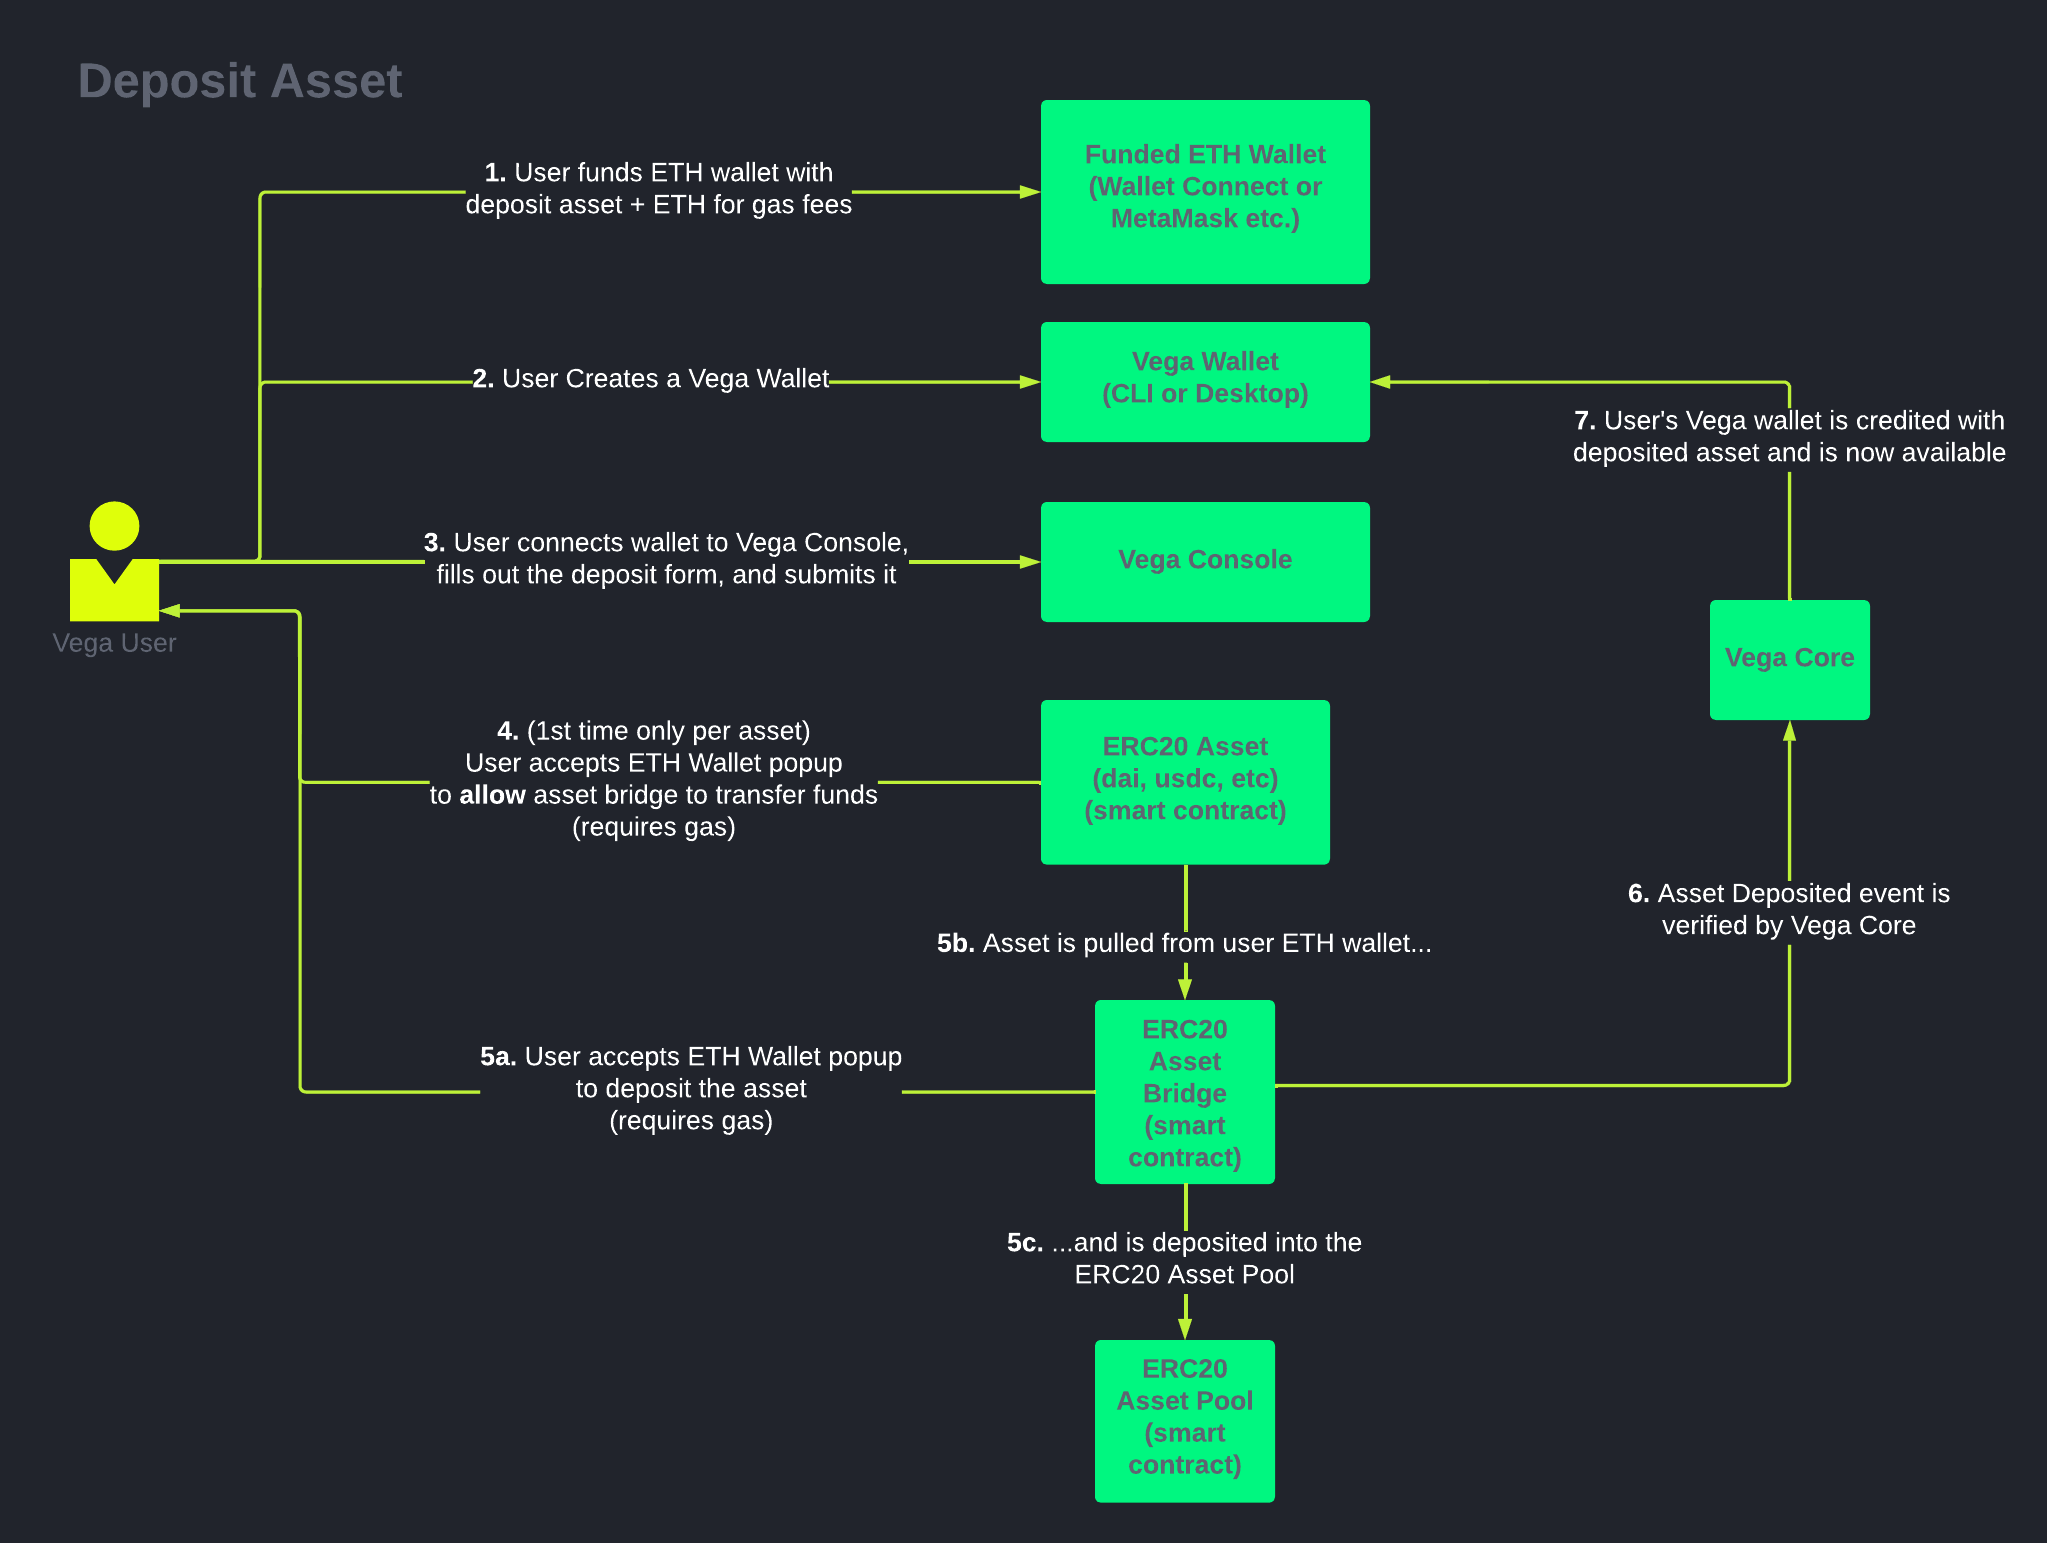 User centric deposit diagram